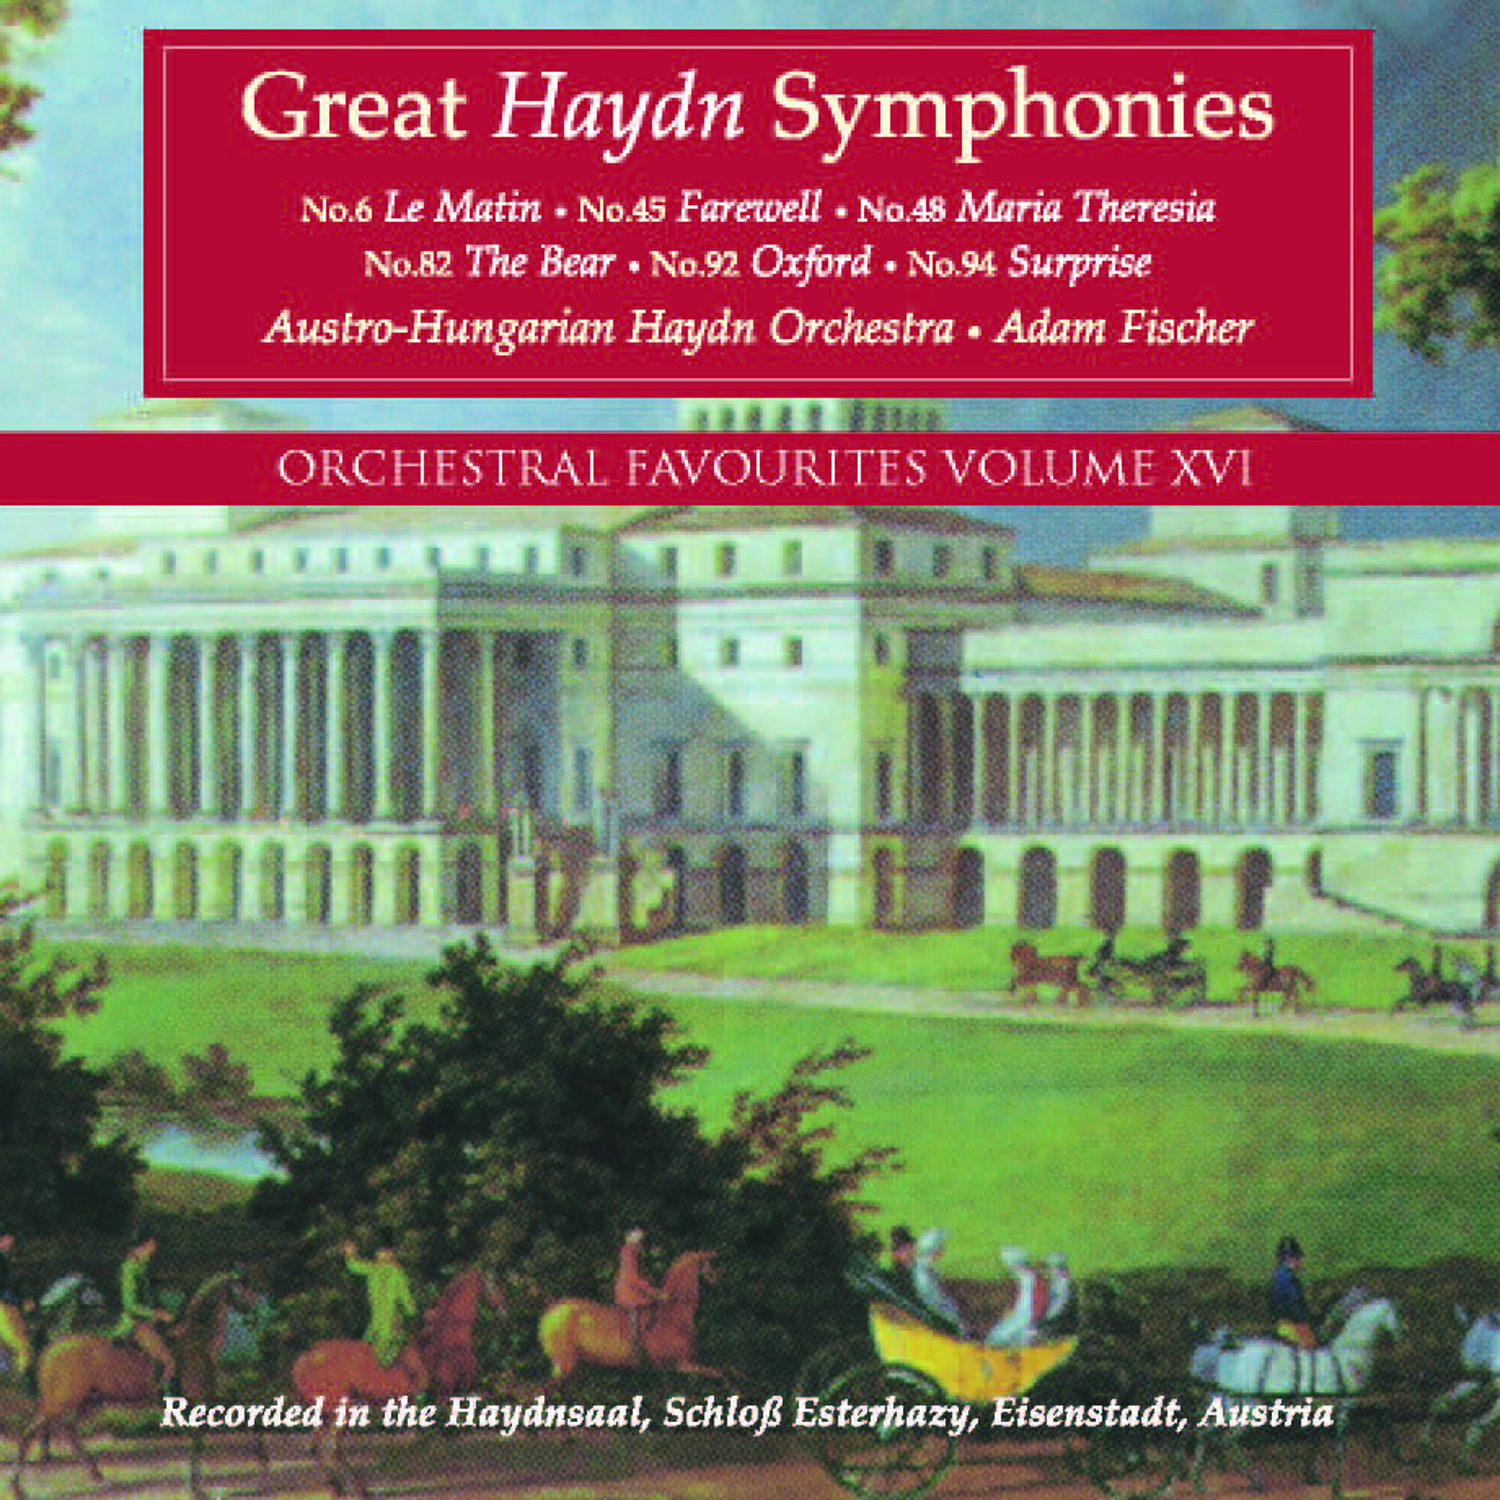 Symphony No. 45 in F-Sharp Minor, Hob.I:45 "Farewell": IV. Finale: Presto - Adagio